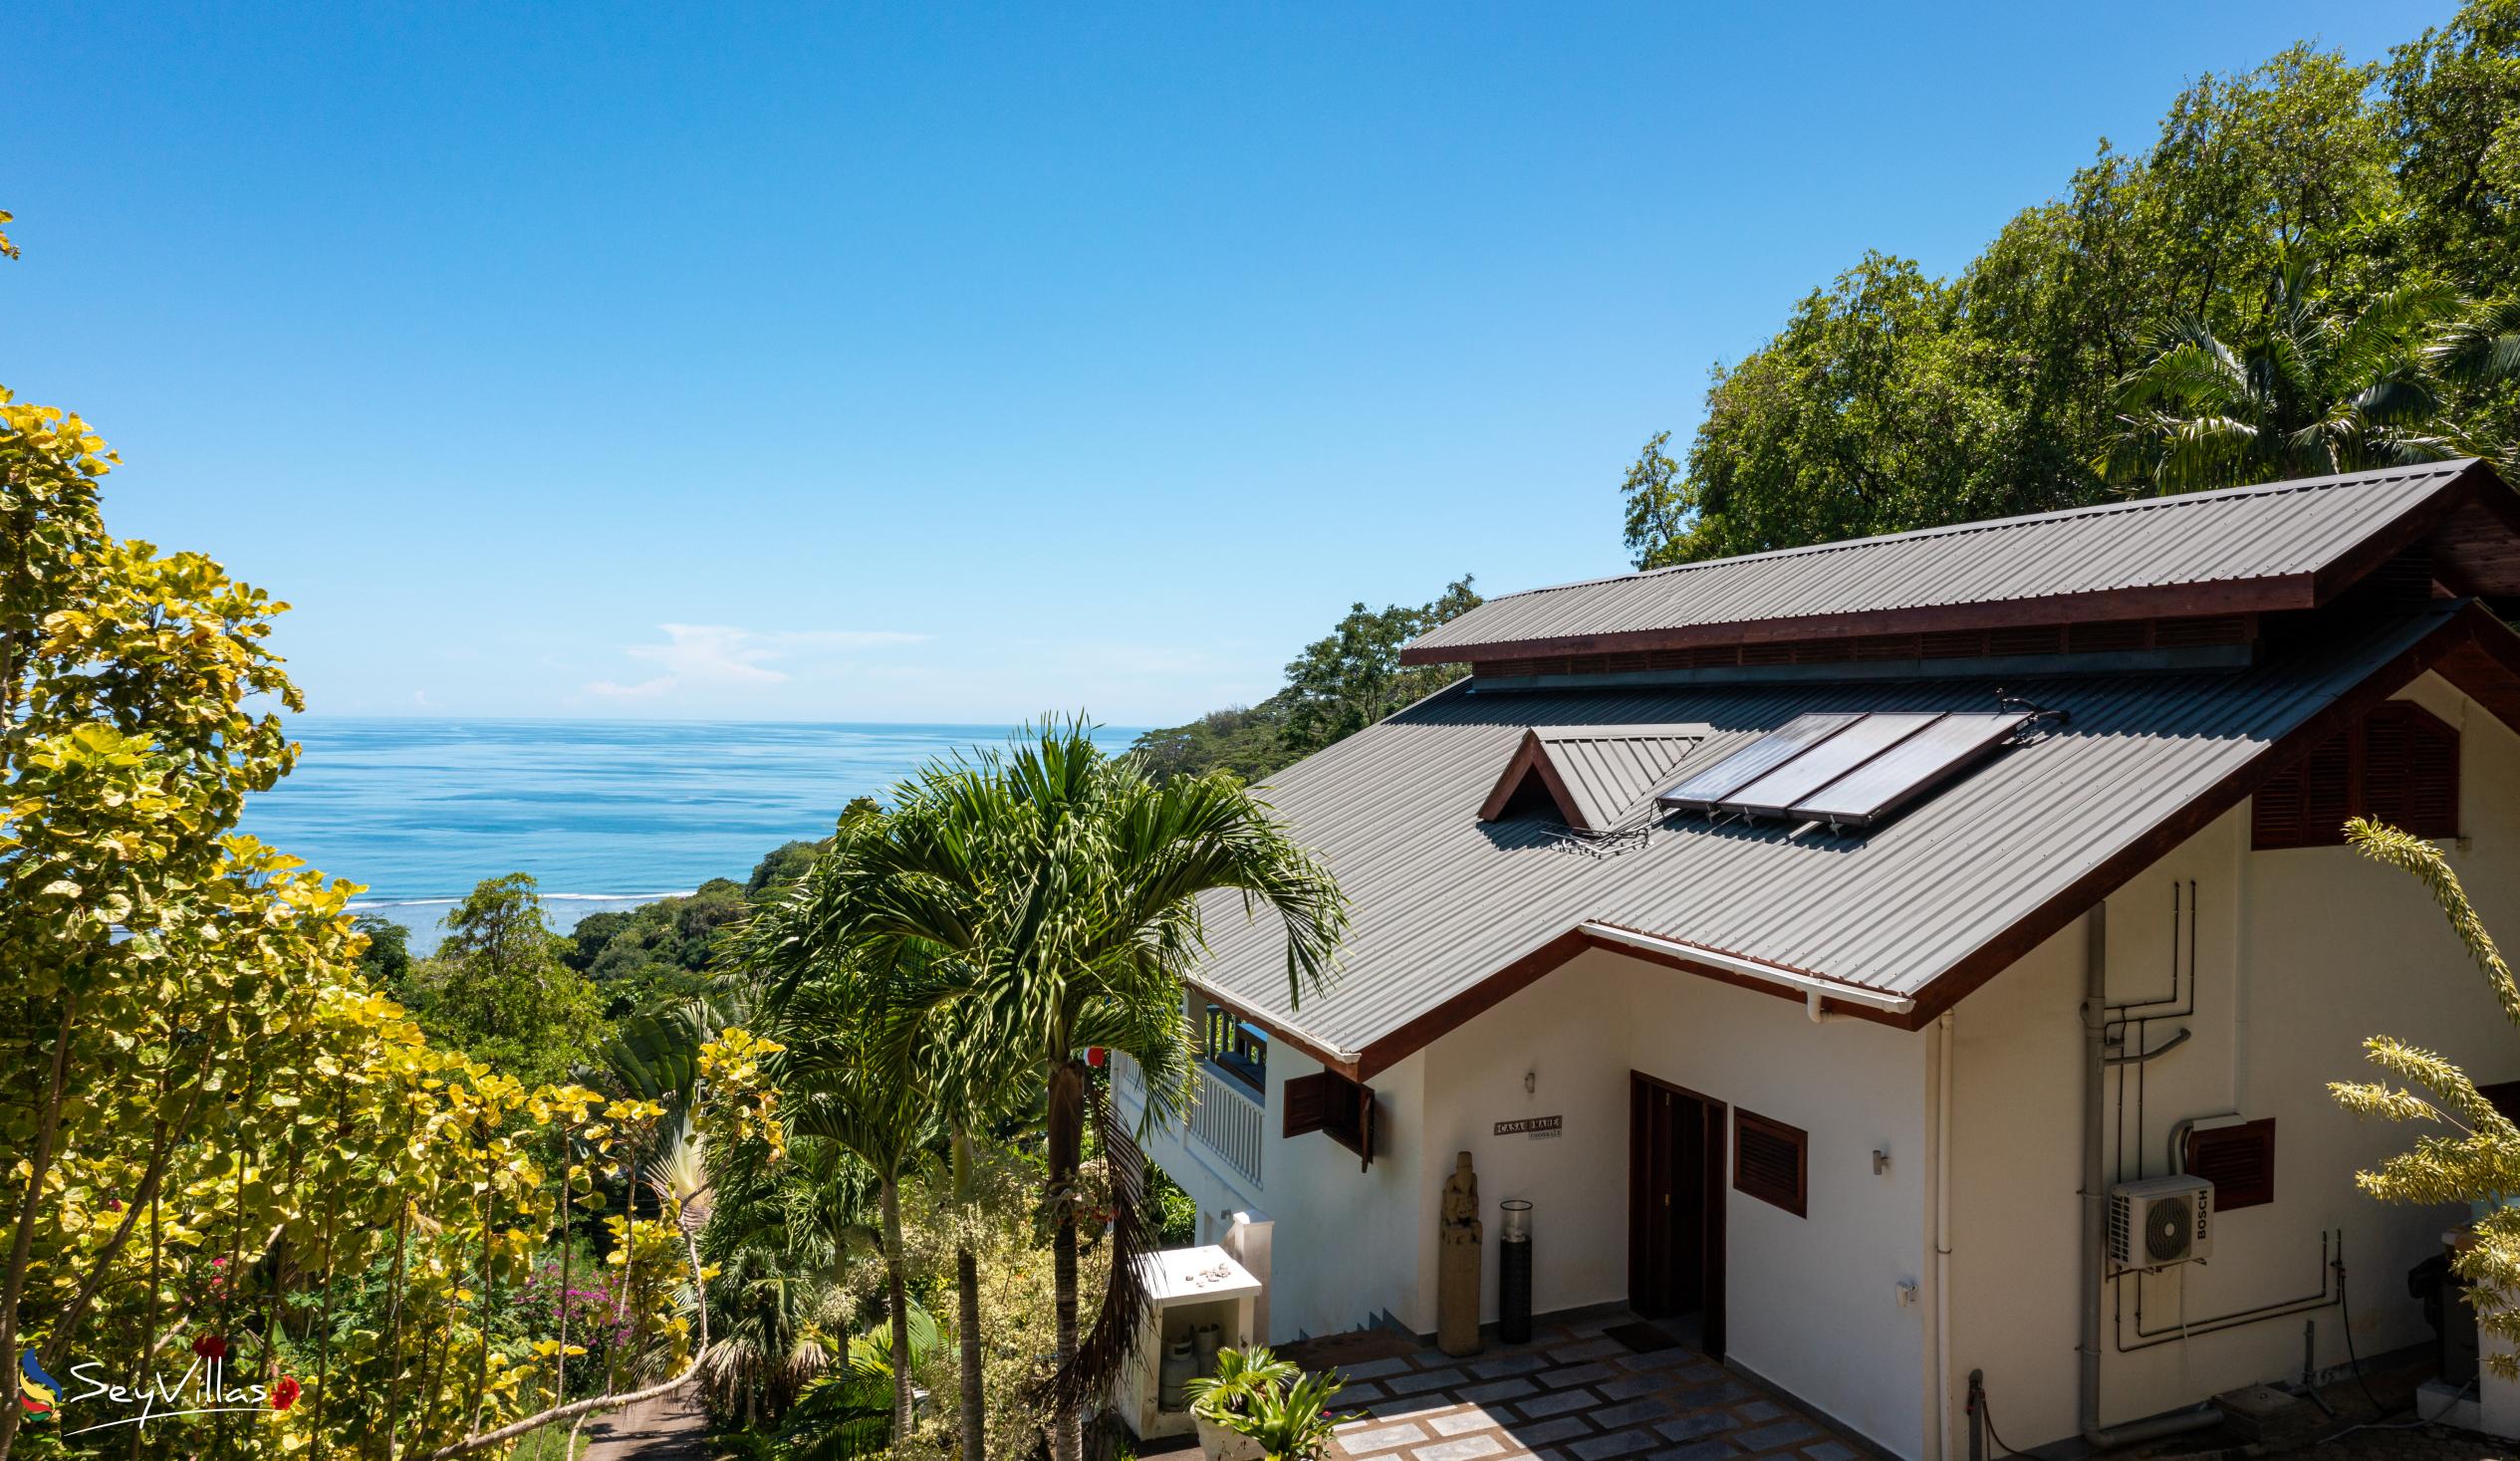 Foto 7: Hilltop Villa Bougainville - Aussenbereich - Mahé (Seychellen)